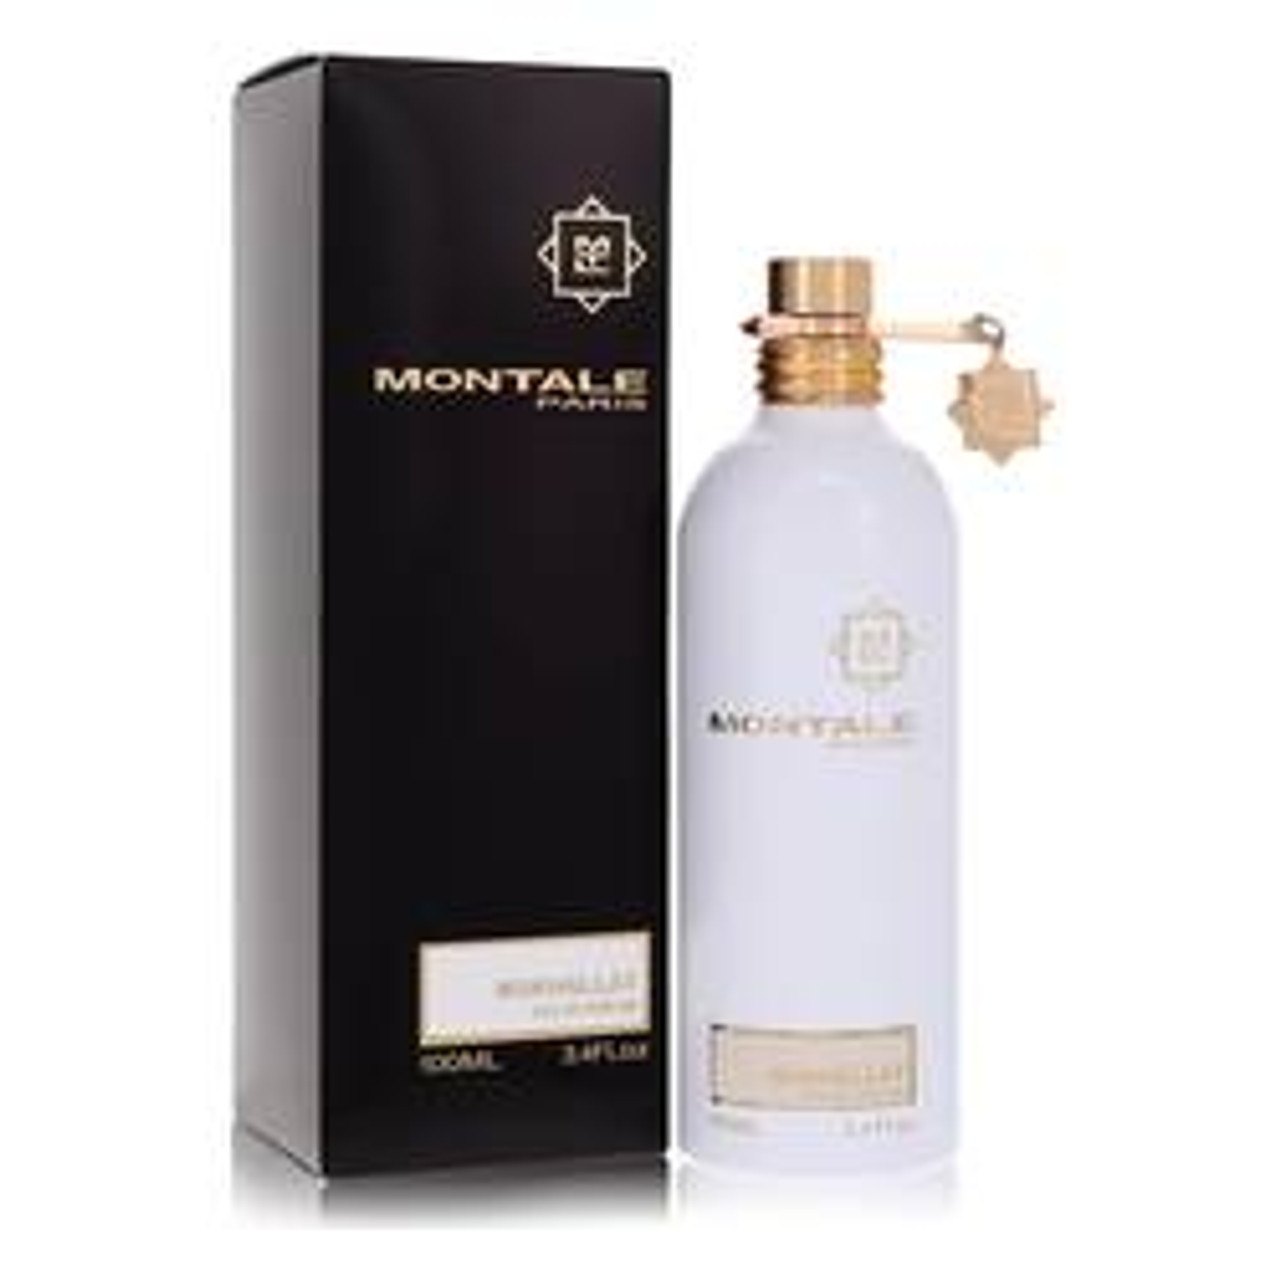 Montale Mukhallat Perfume By Montale Eau De Parfum Spray 3.4 oz for Women - *Pre-Order